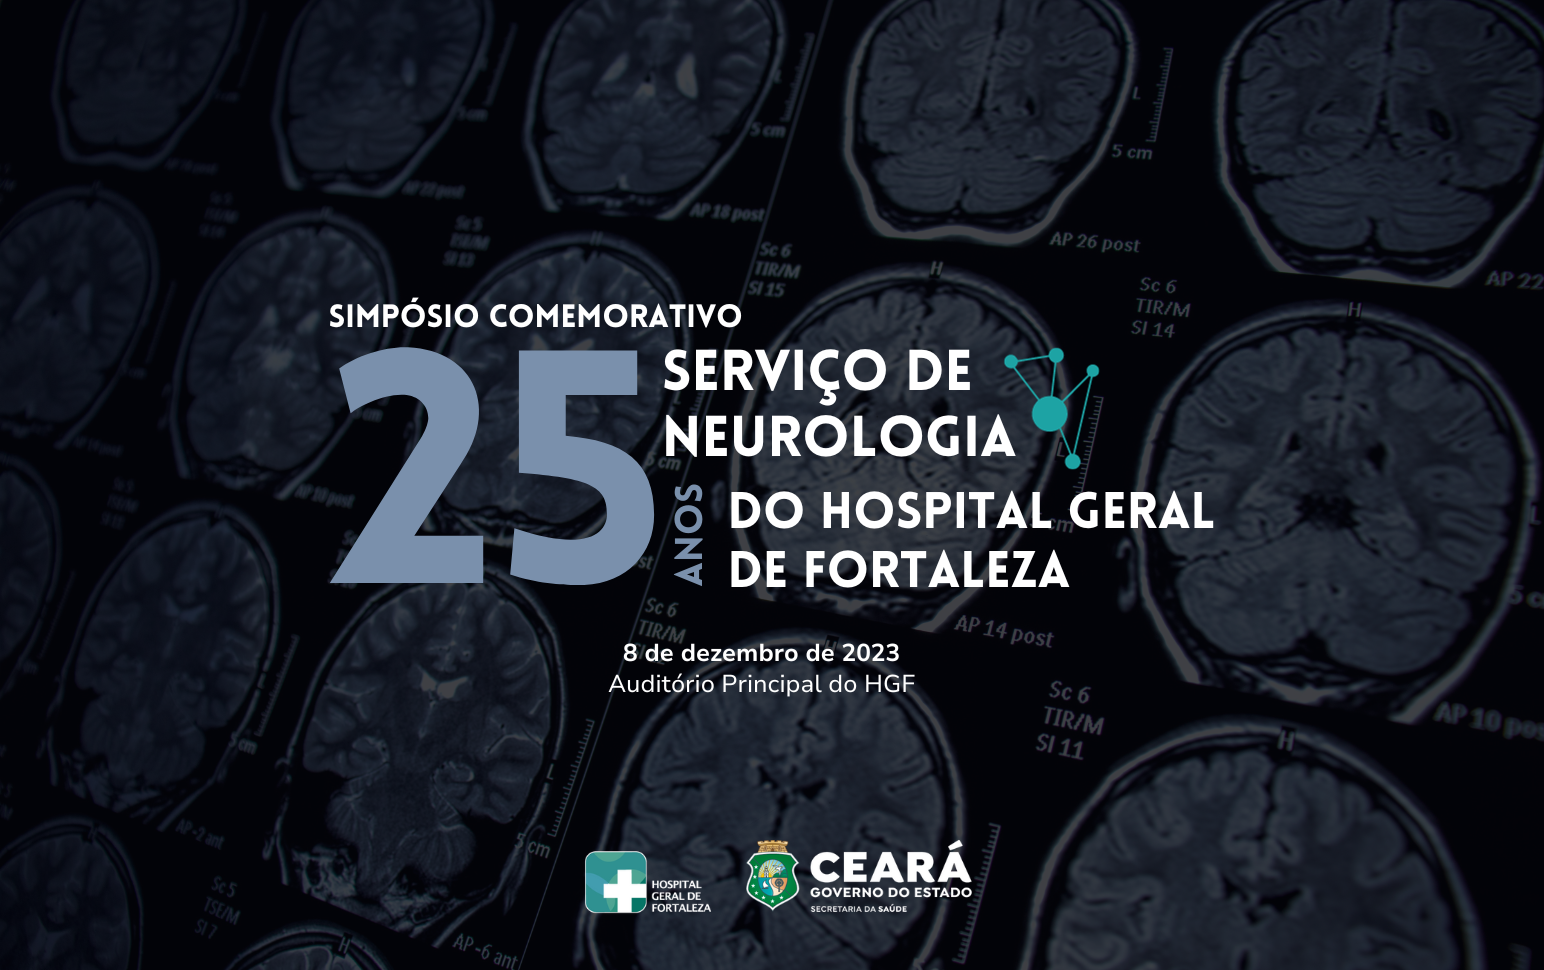 De serviço de suporte a carro-chefe: Neurologia do HGF completa 25 anos com simpósio comemorativo e mais de mil atendimentos por mês